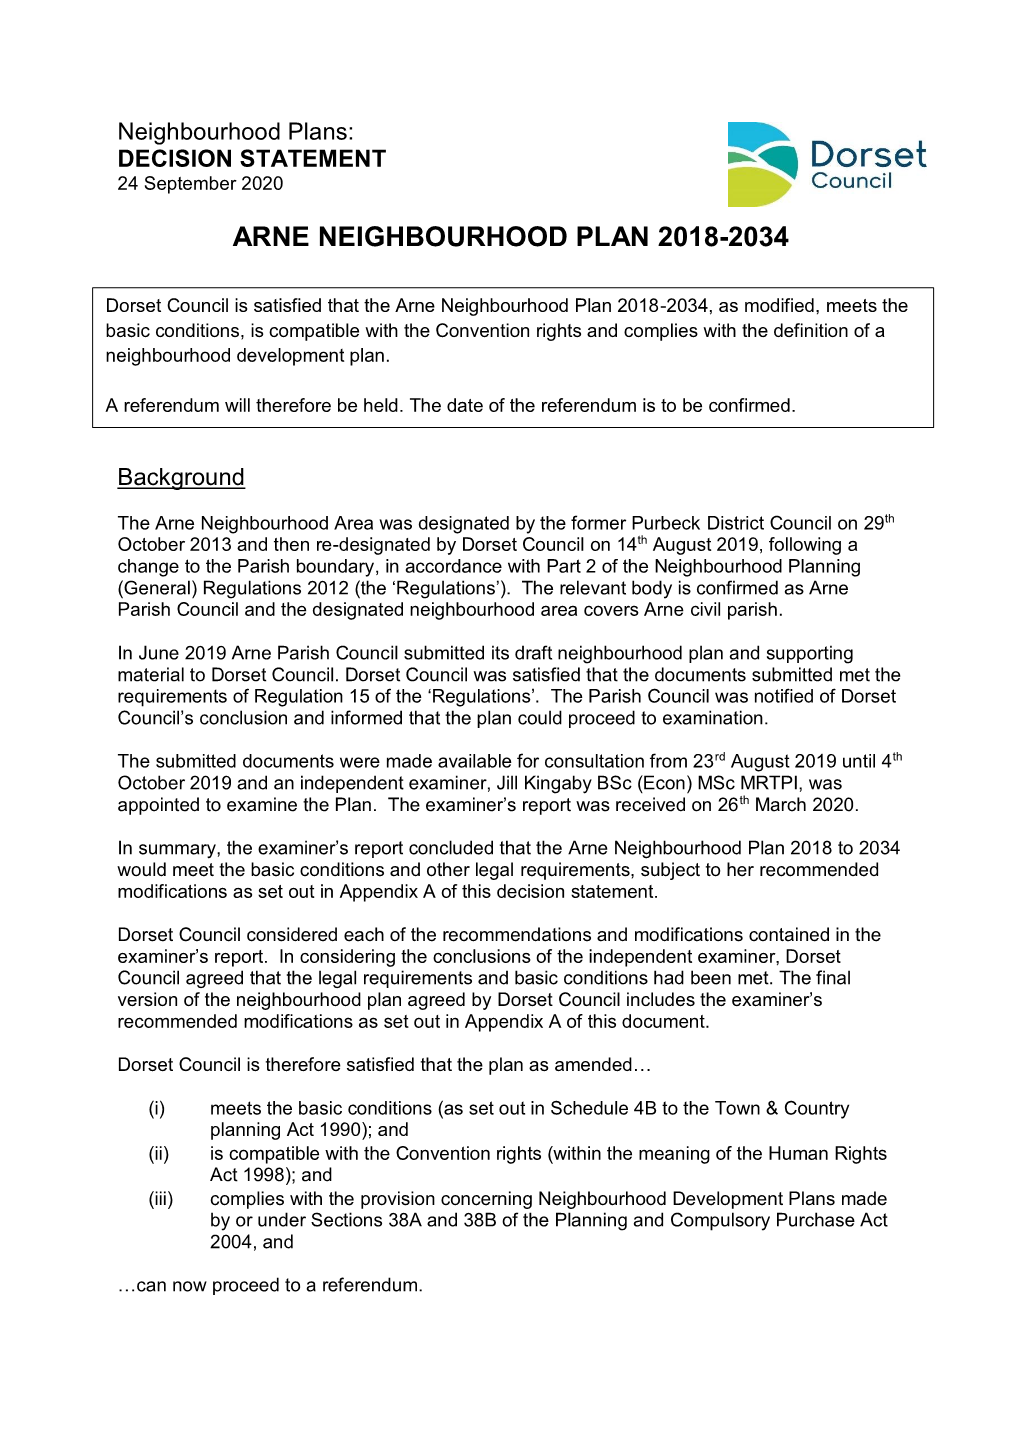 Arne Neighbourhood Plan 2018-2034